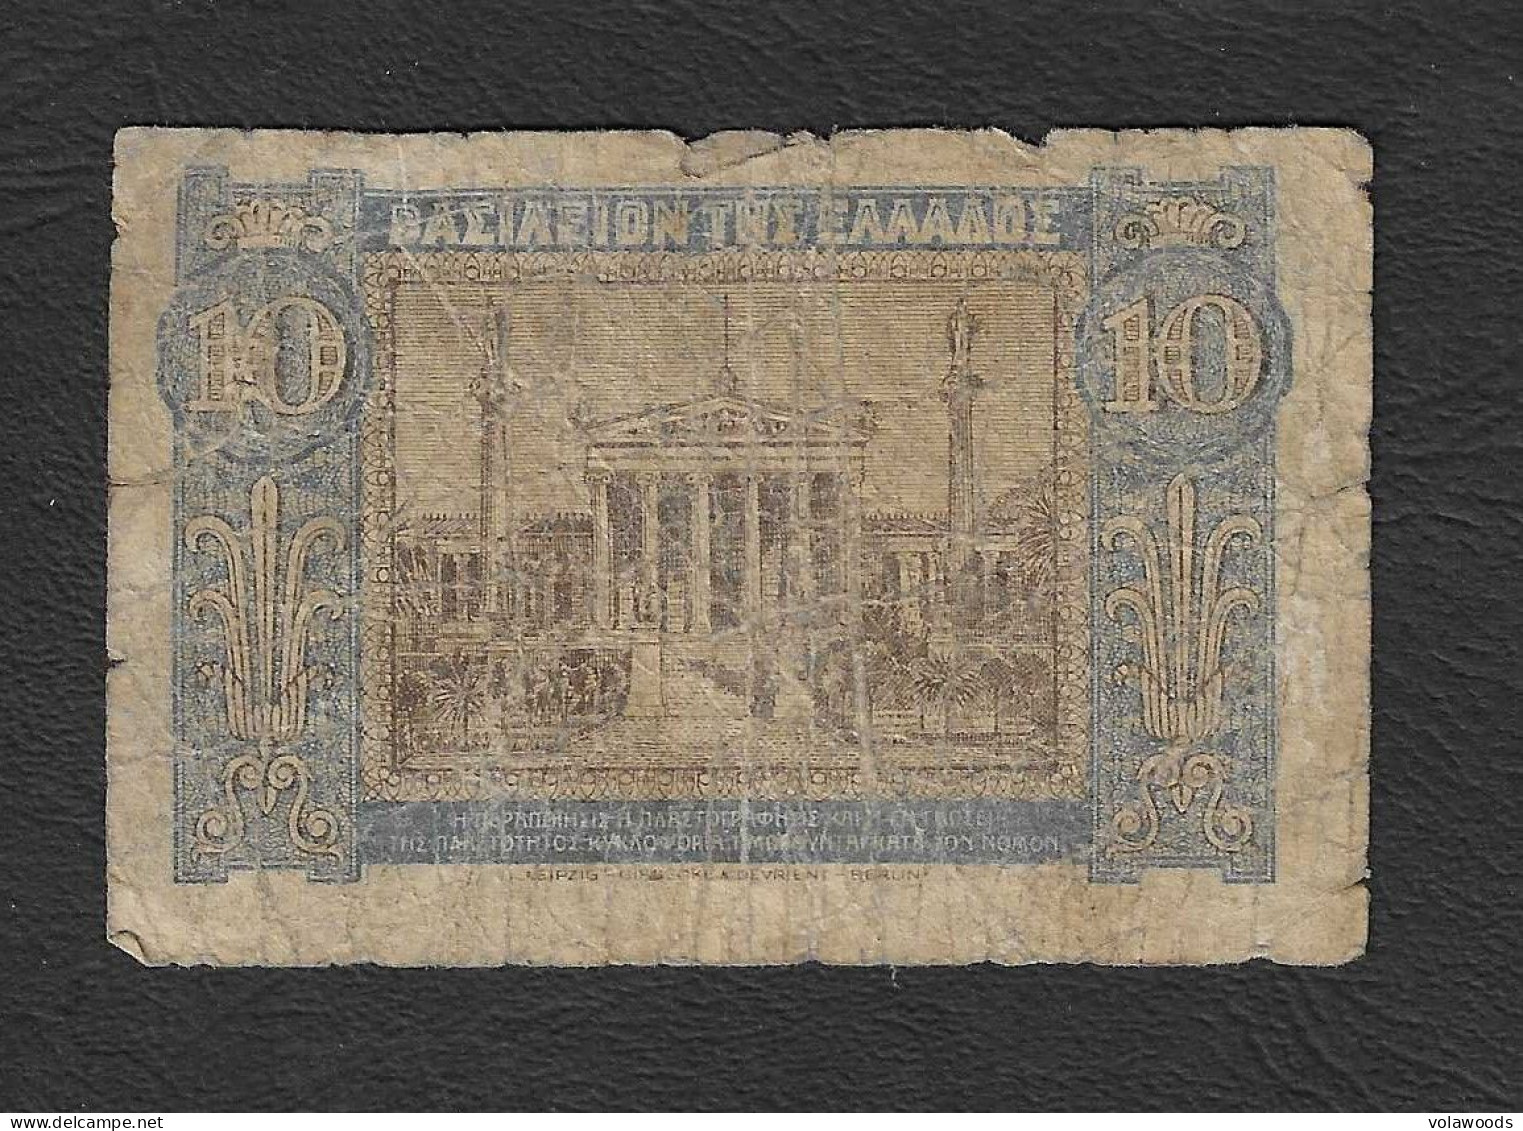 Grecia - Banconota Circolata Da 10 Dracme P-314 - 1940 #17 - Grecia